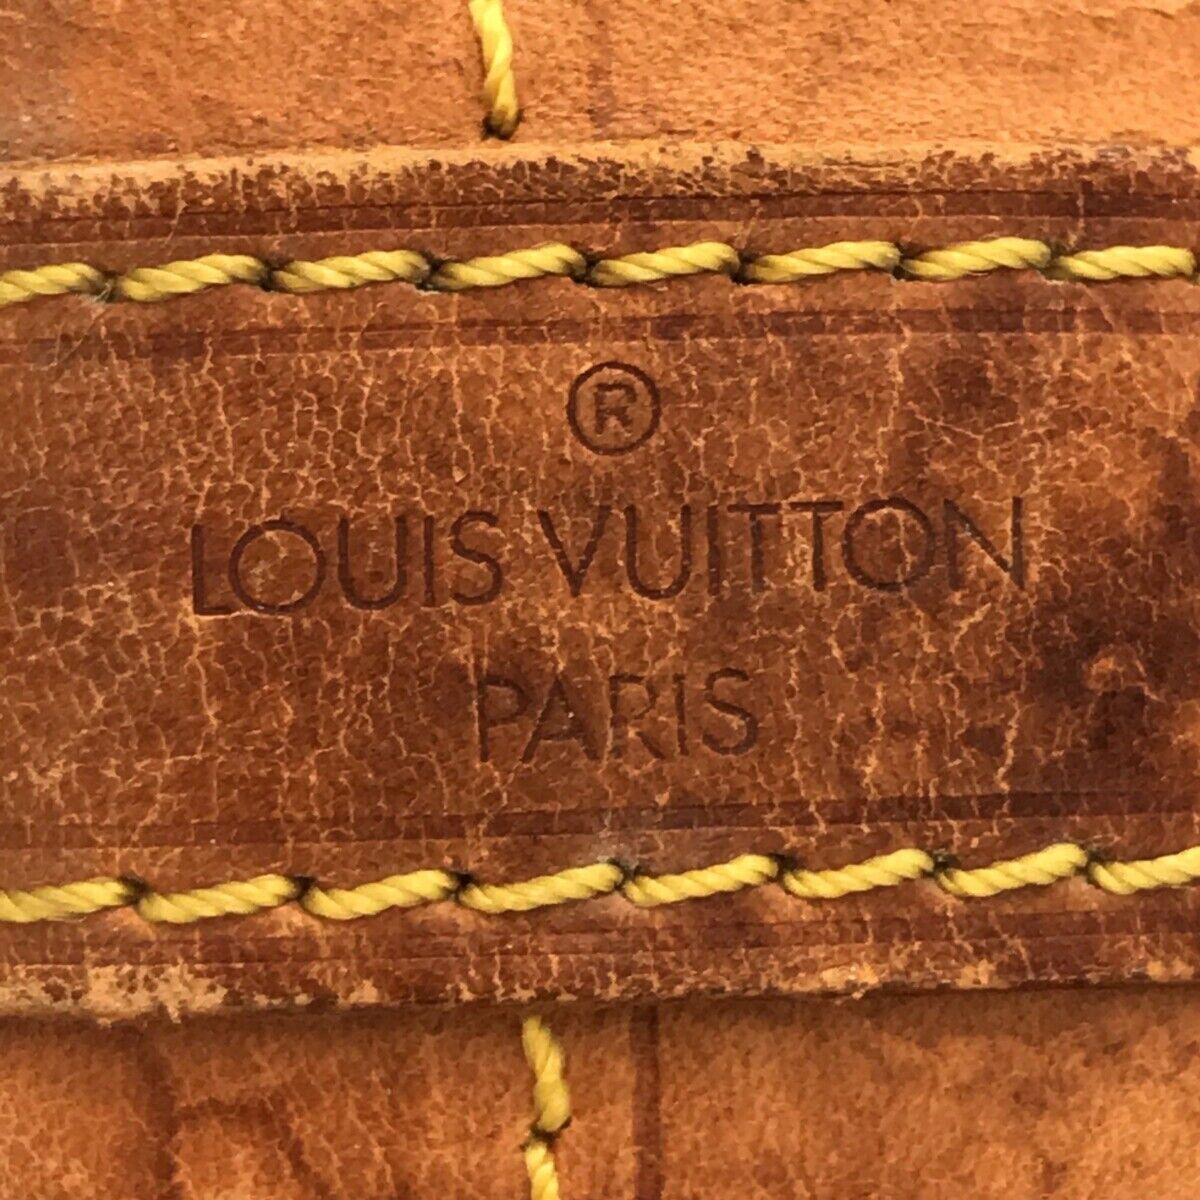 Louis Vuitton, Bags, Authentic Louis Vuitton Noe Gm